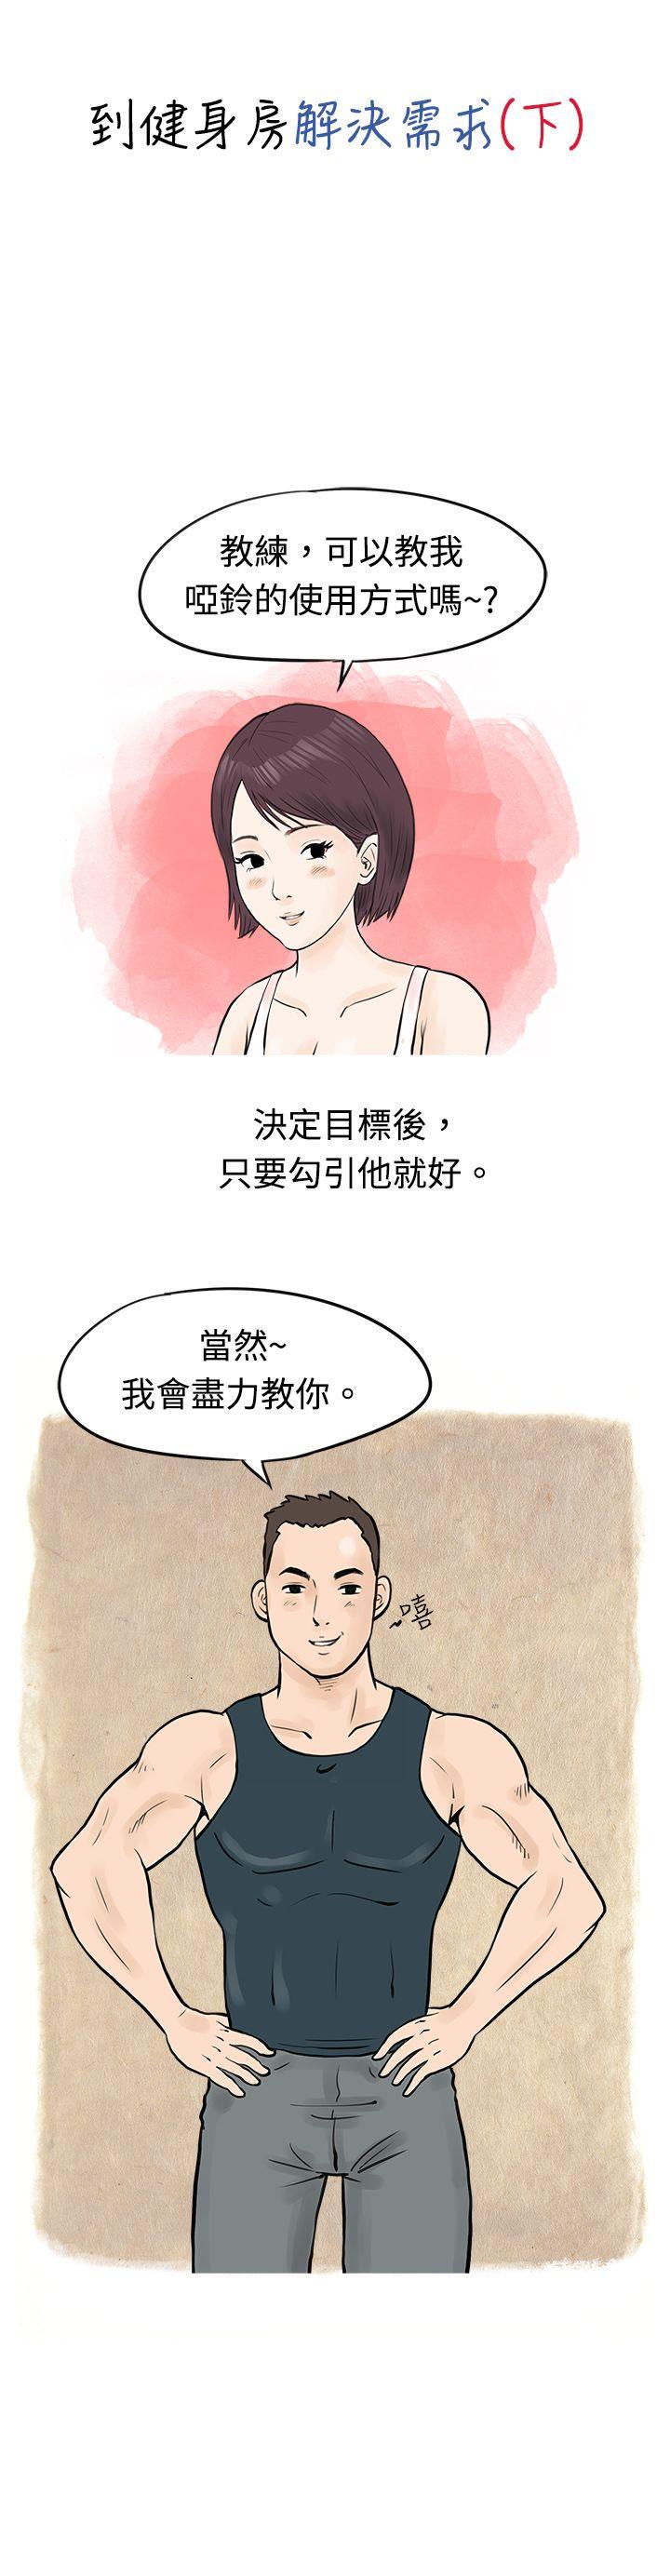 韩国污漫画 秘密Story 到健身房解决需求(下) 1